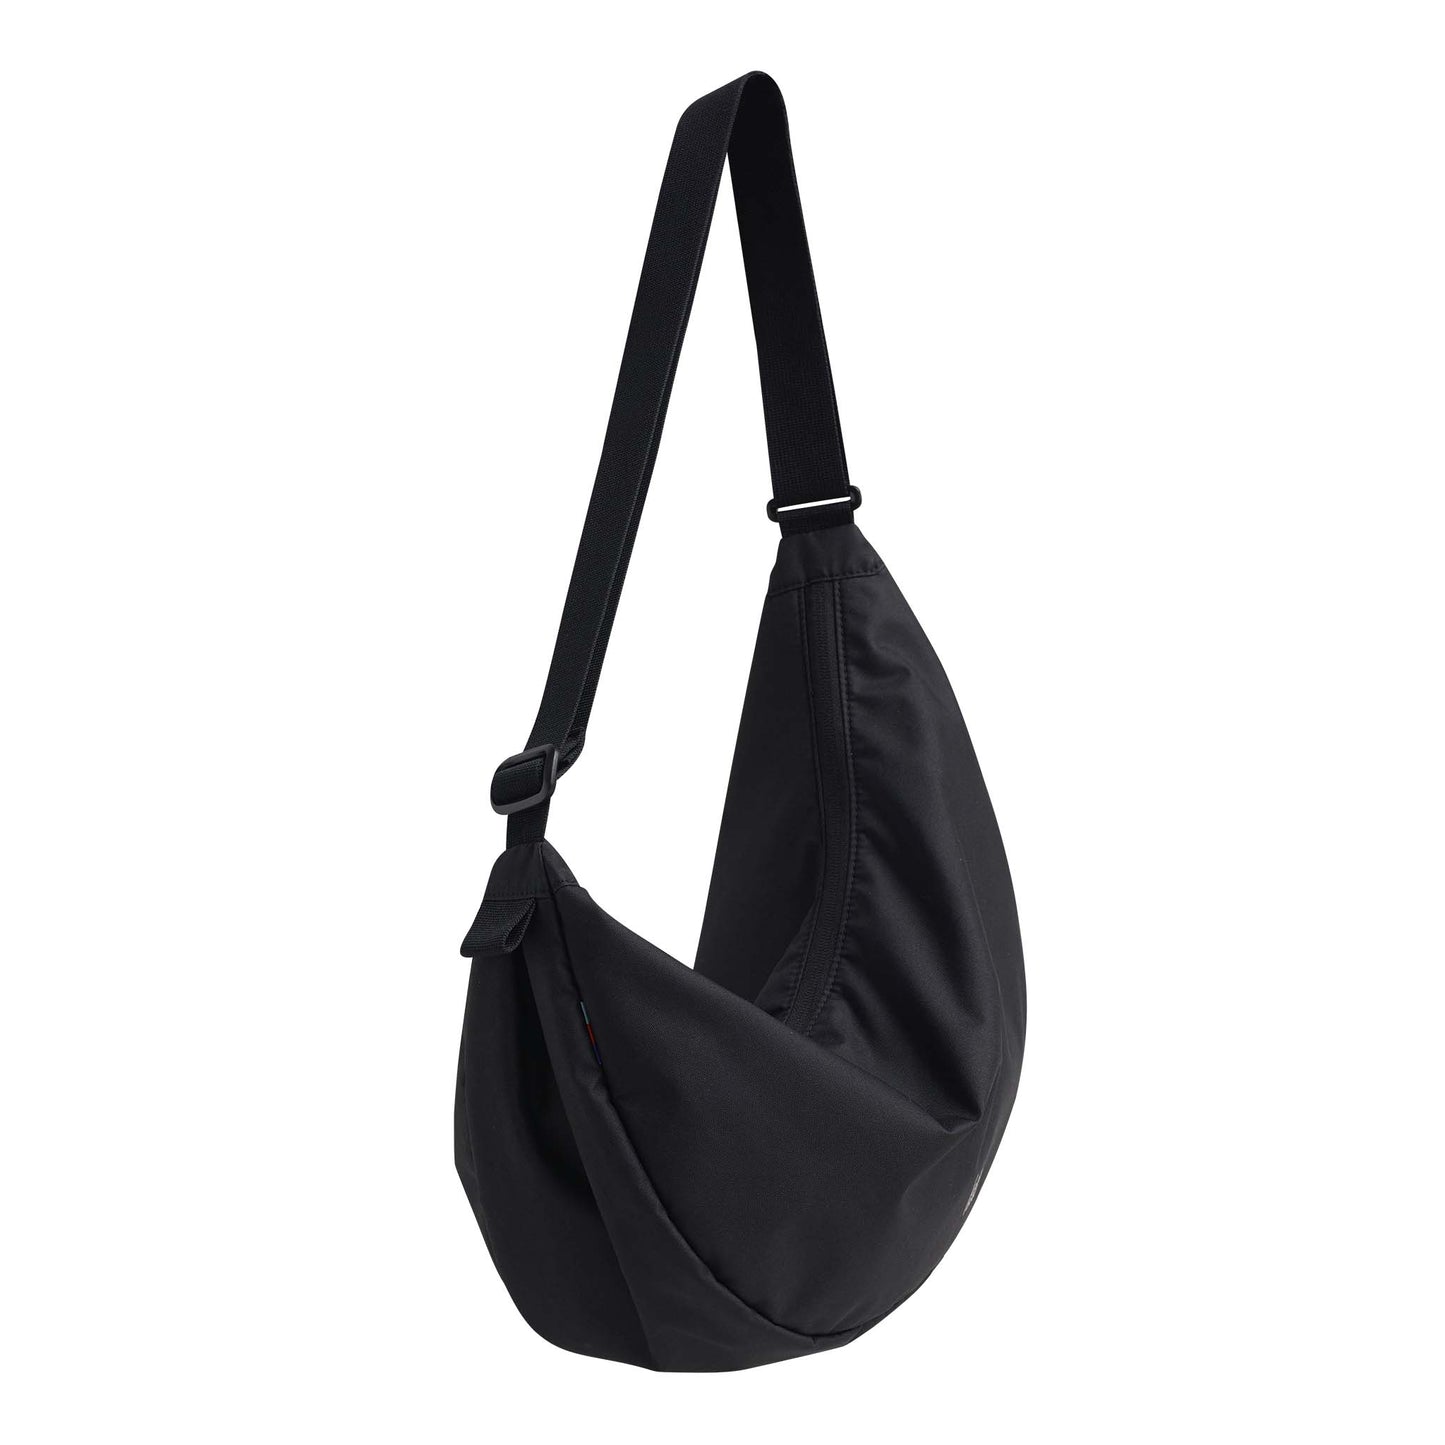 GOT BAG Moon Bag Large "Black"